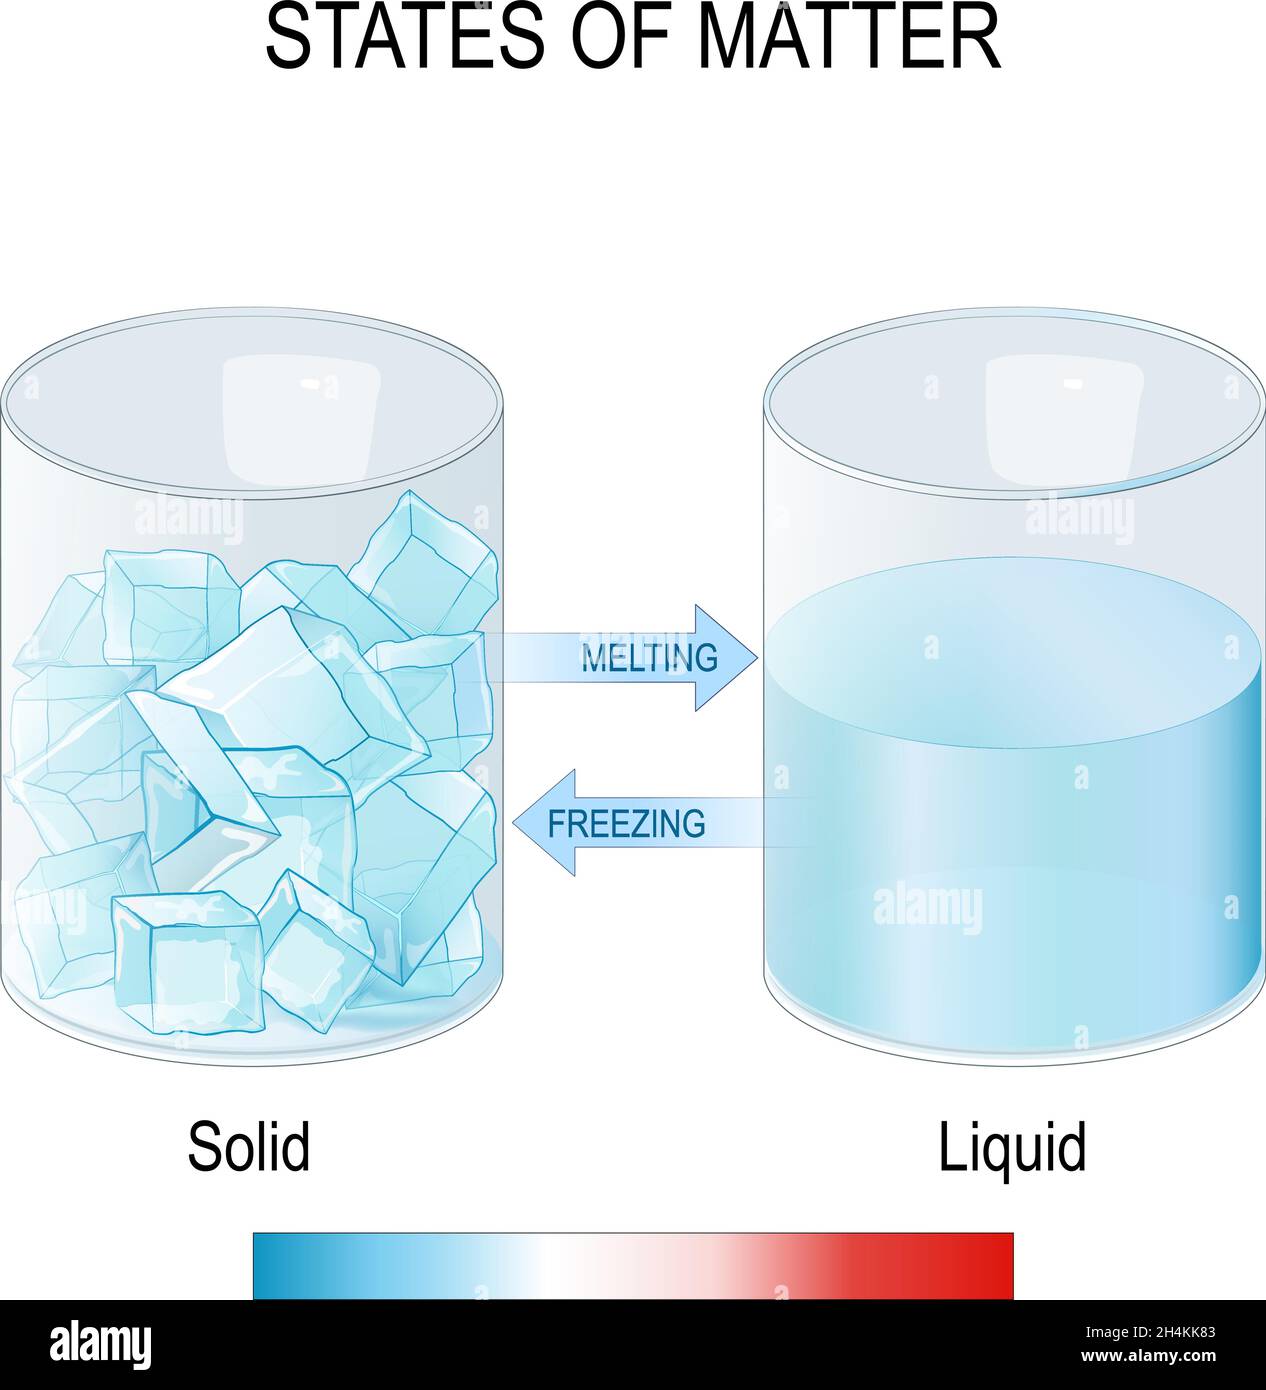 zustände der Materie. Zwei Gläser mit Eiswürfeln und Wasser. Einfrieren und schmelzen. Flüssig und fest. Wissenschaftliches Experiment. Physik oder Chemie studieren. Stock Vektor